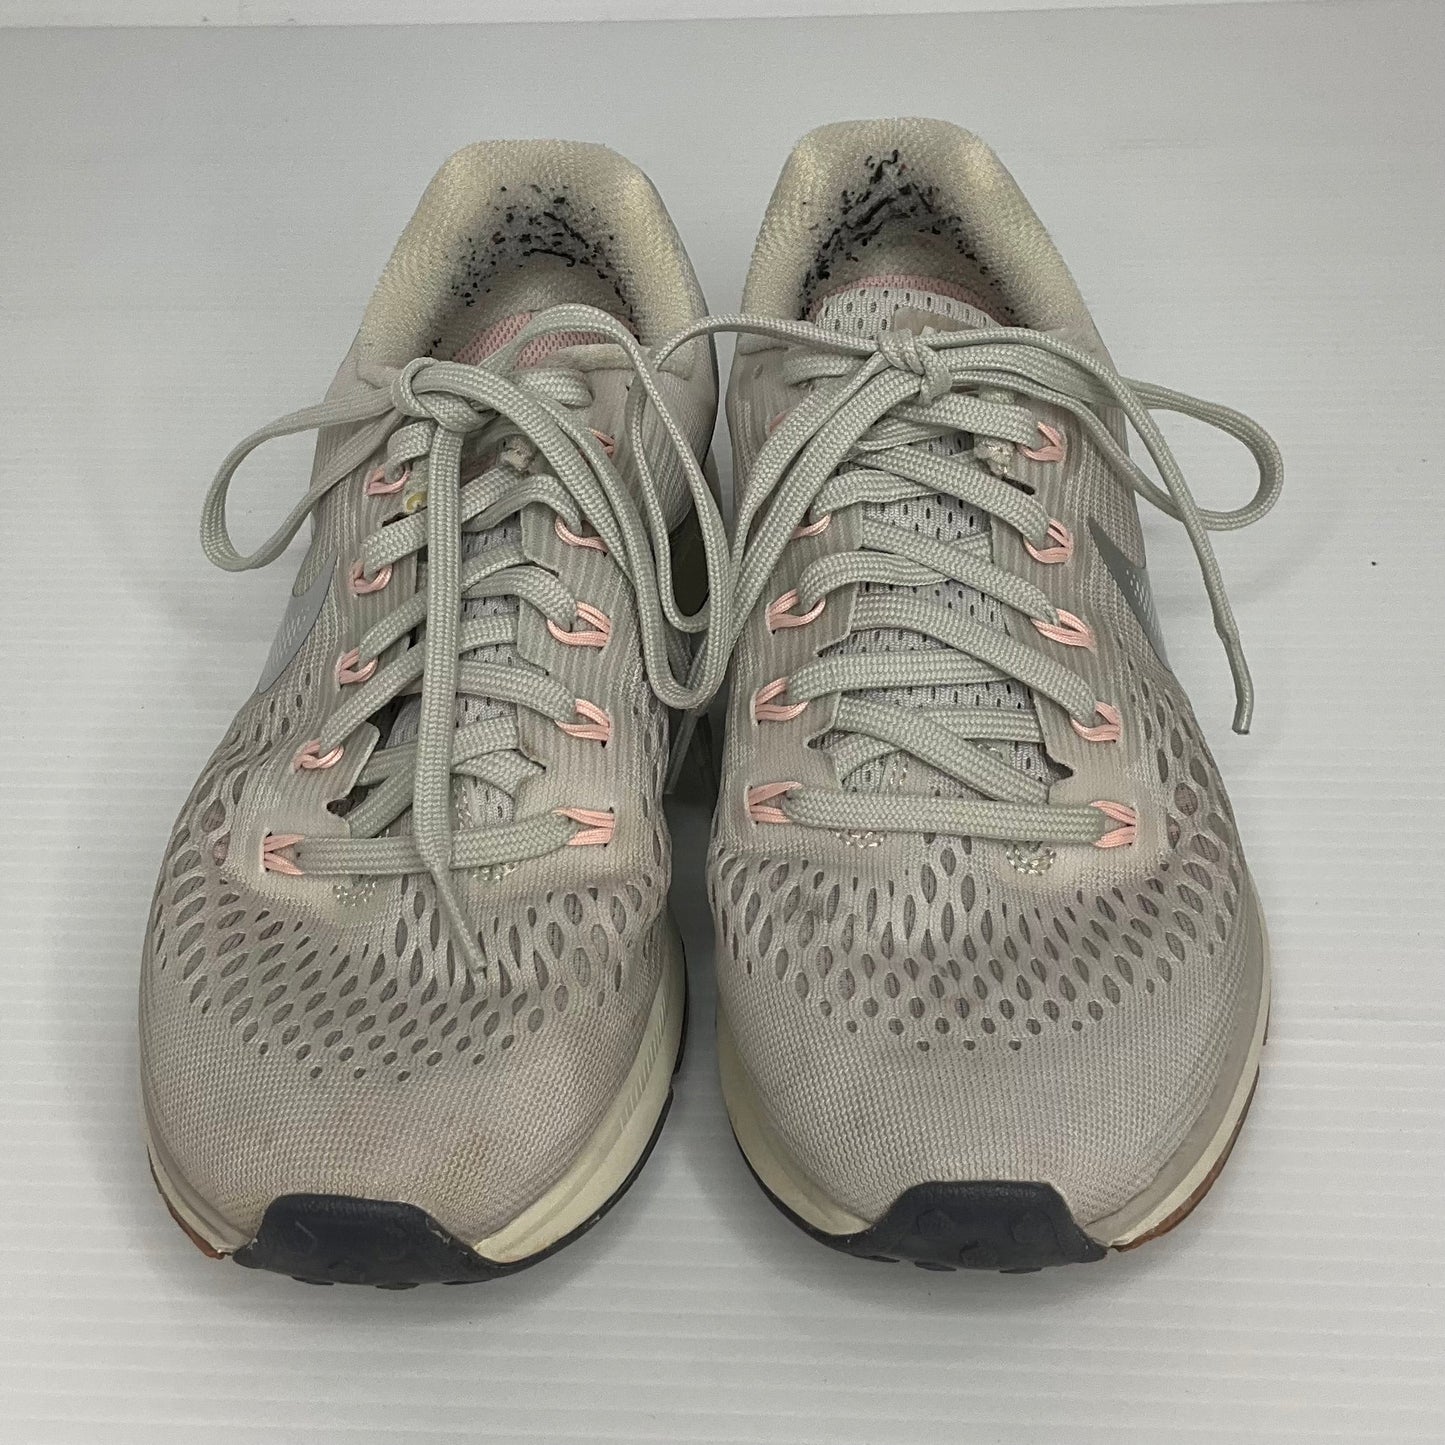 Grey Shoes Athletic Nike, Size 7